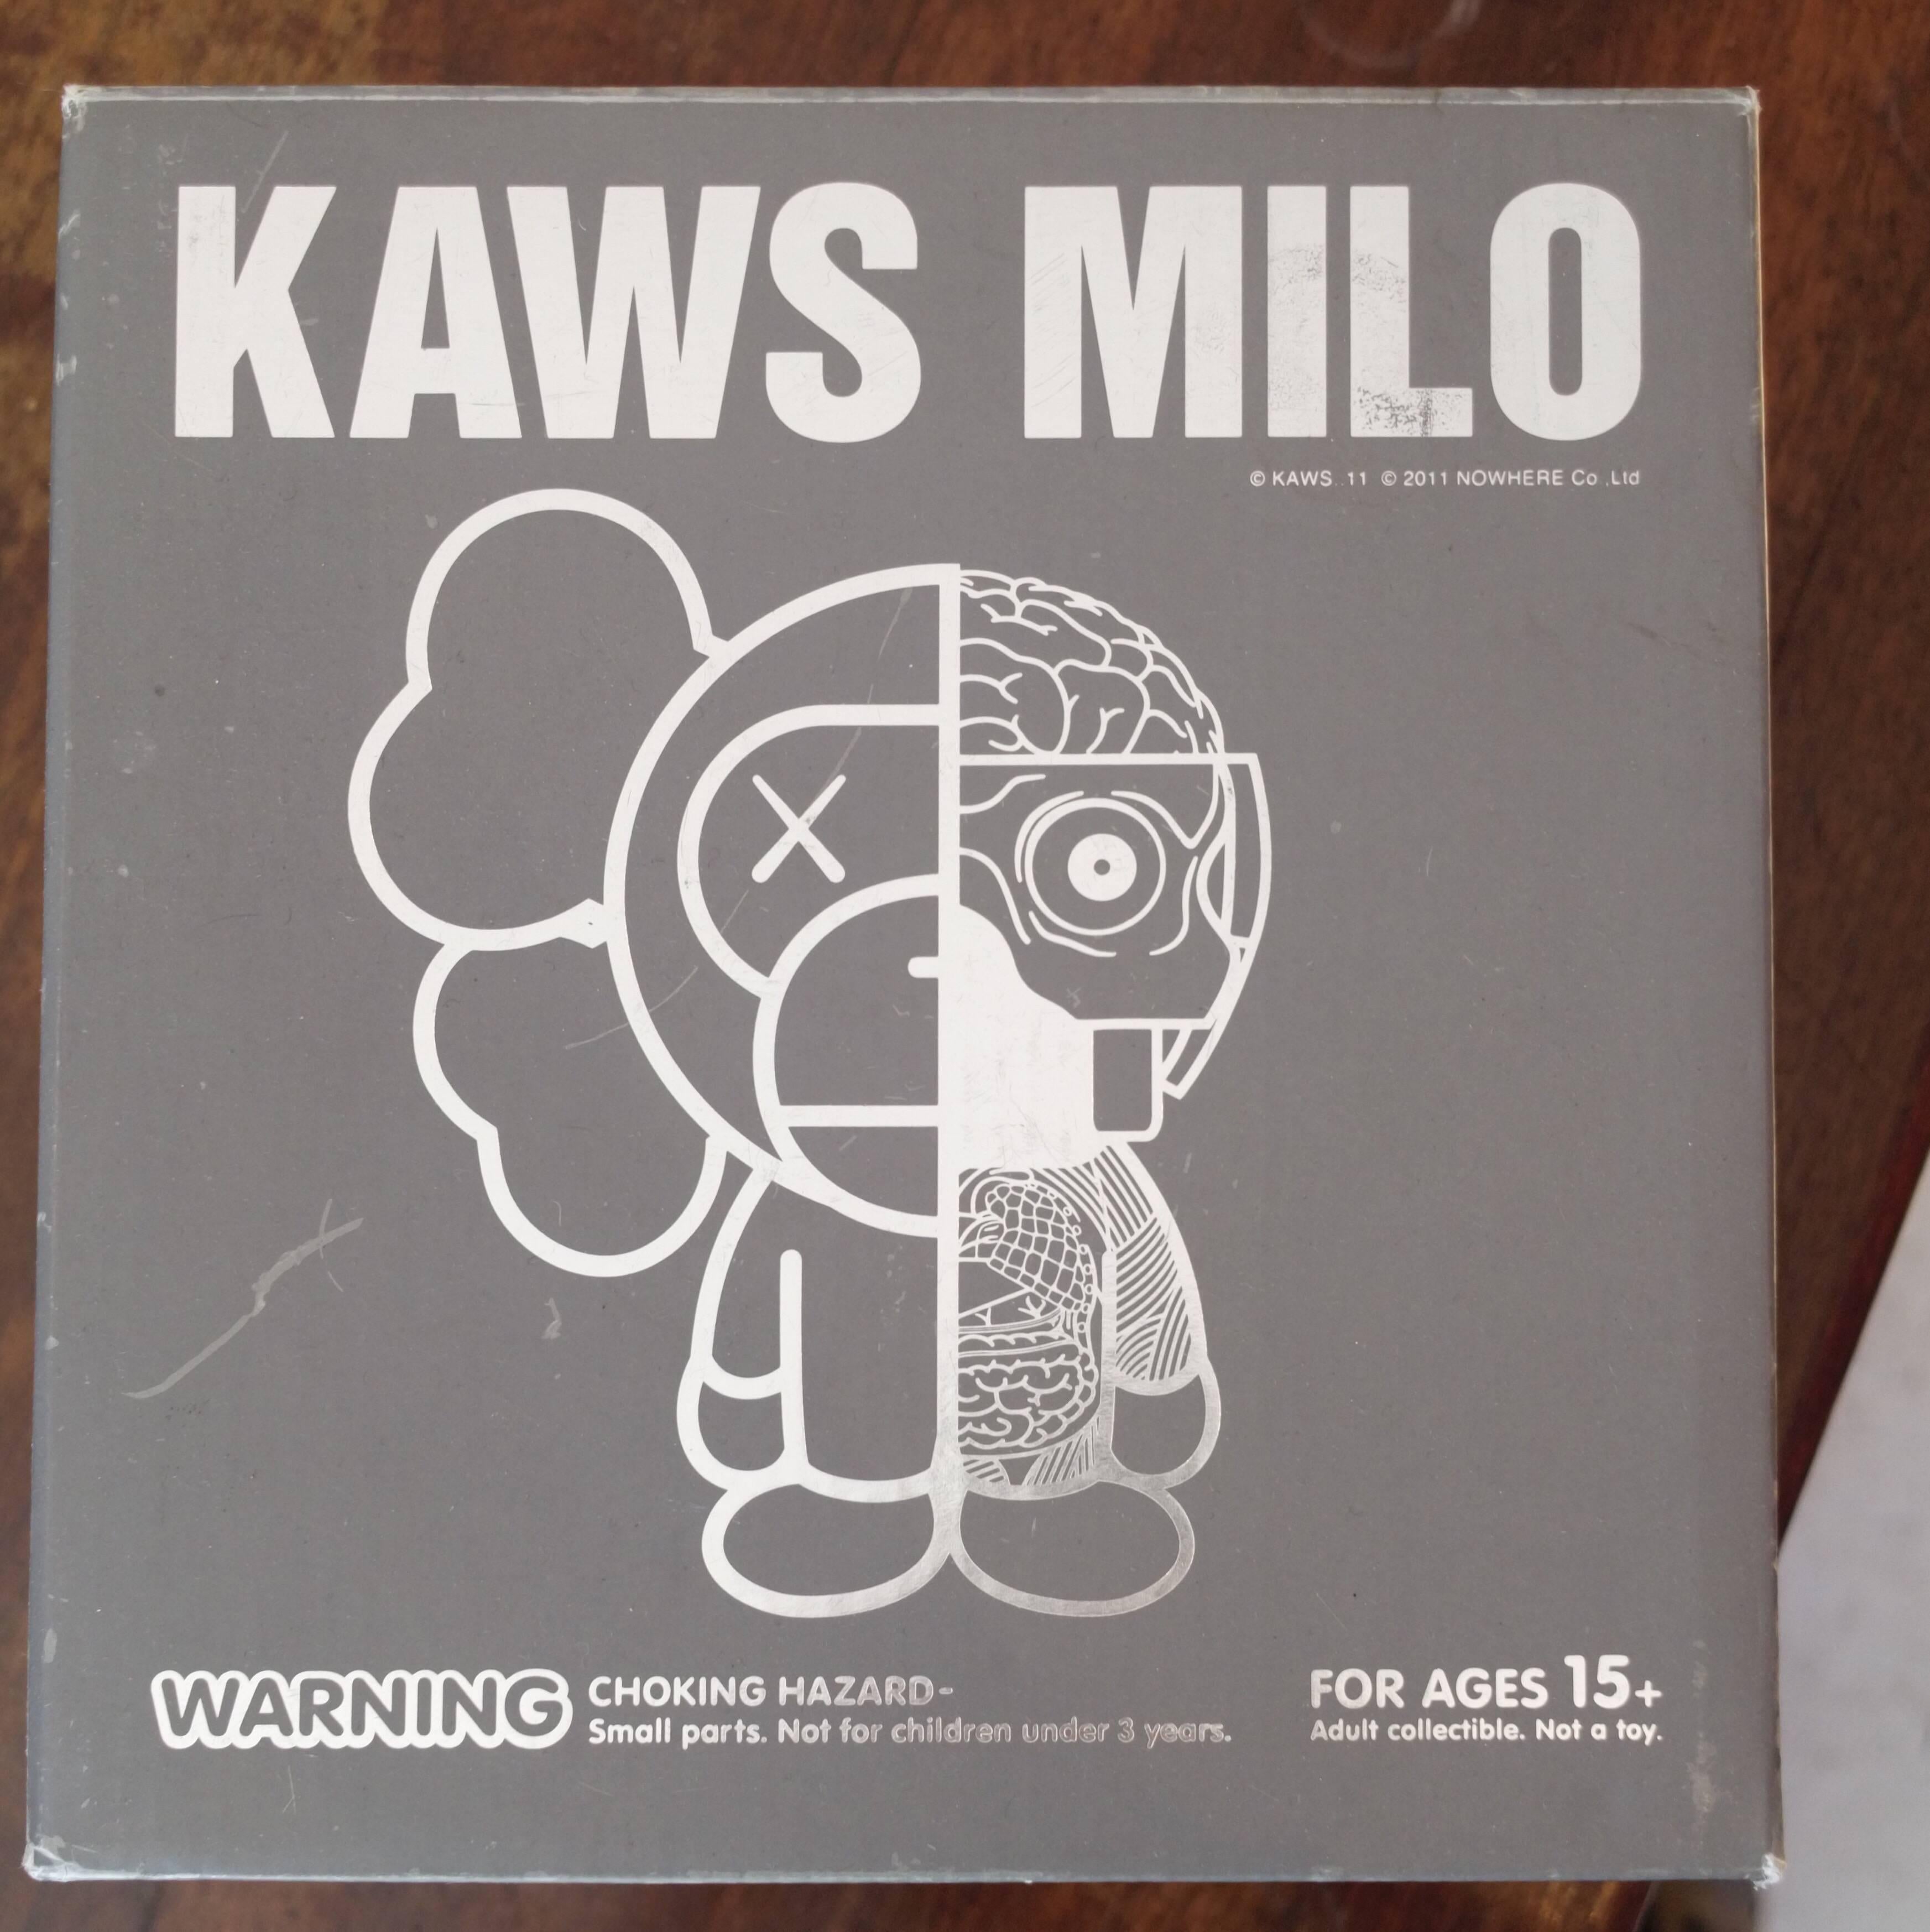 Kaws Milo 2011 'Multicolor' a Bathing Ape OriginalFake Medicom Toy Original Box For Sale 1